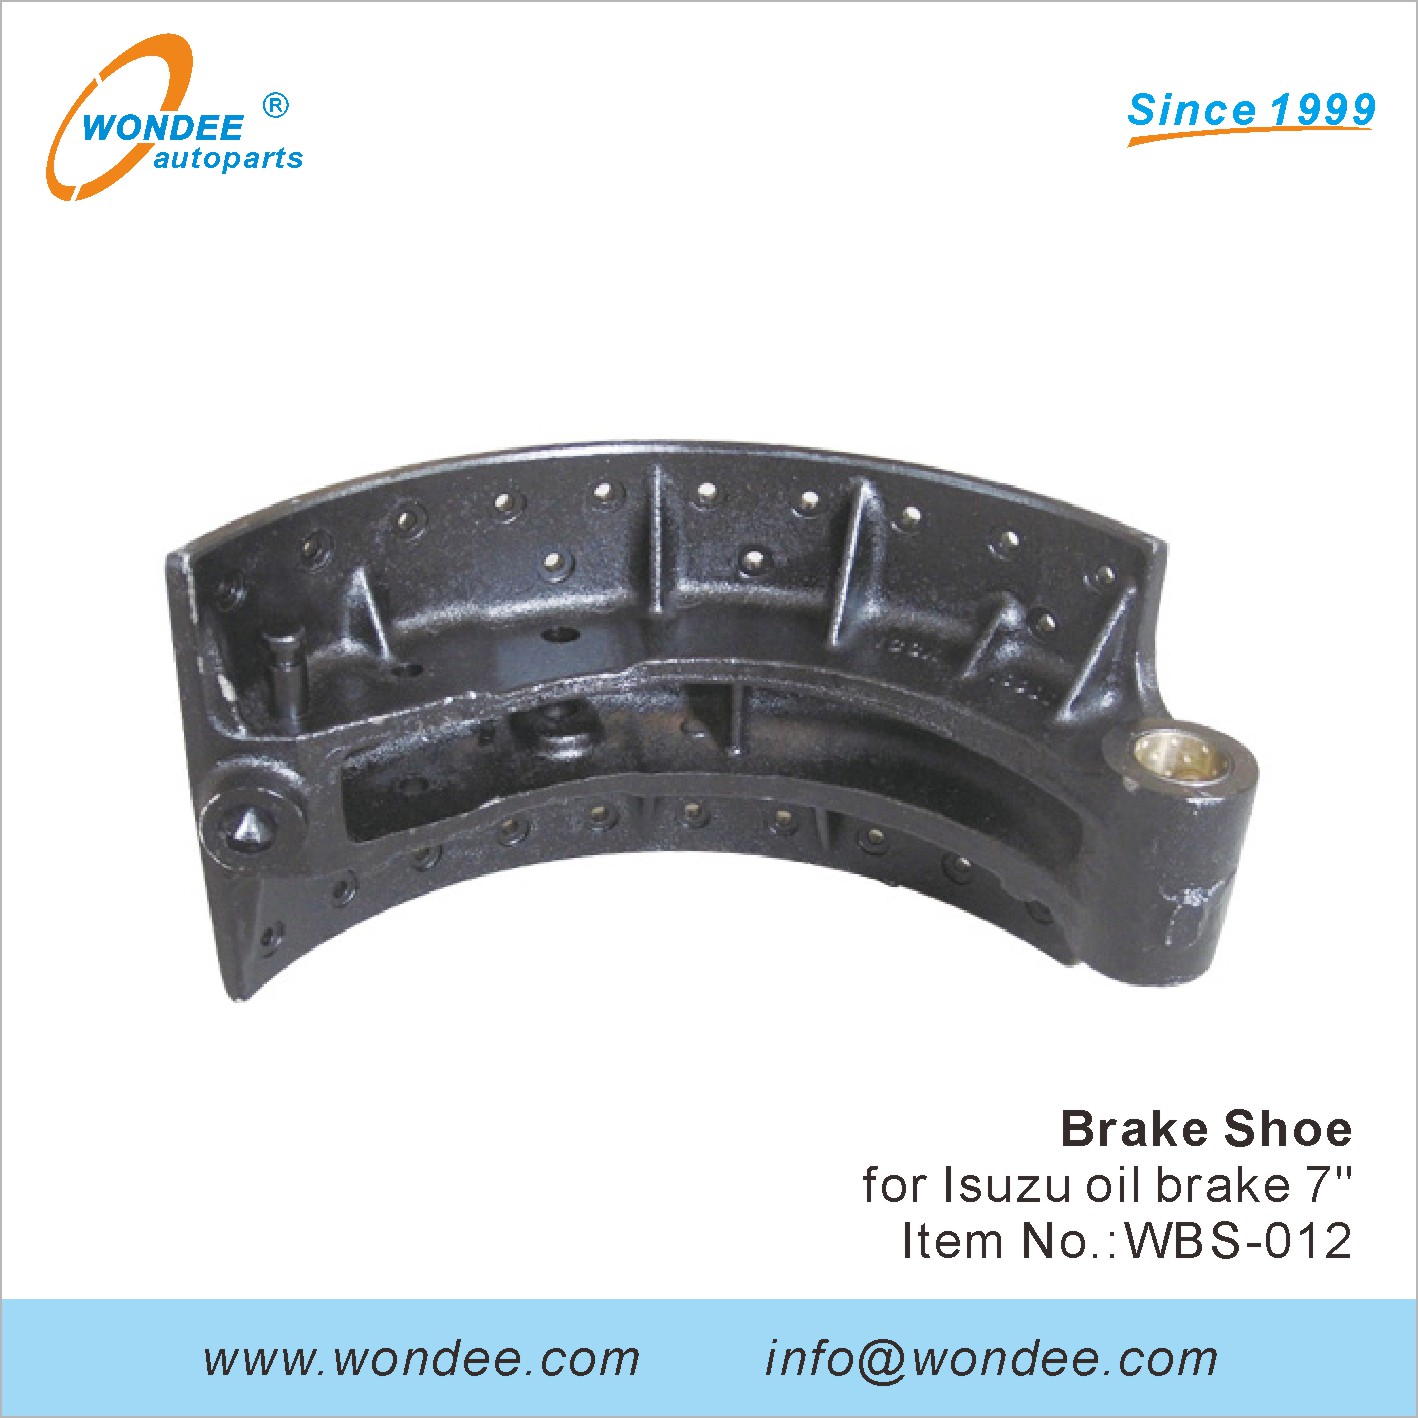 WONDEE brake shoe (12)